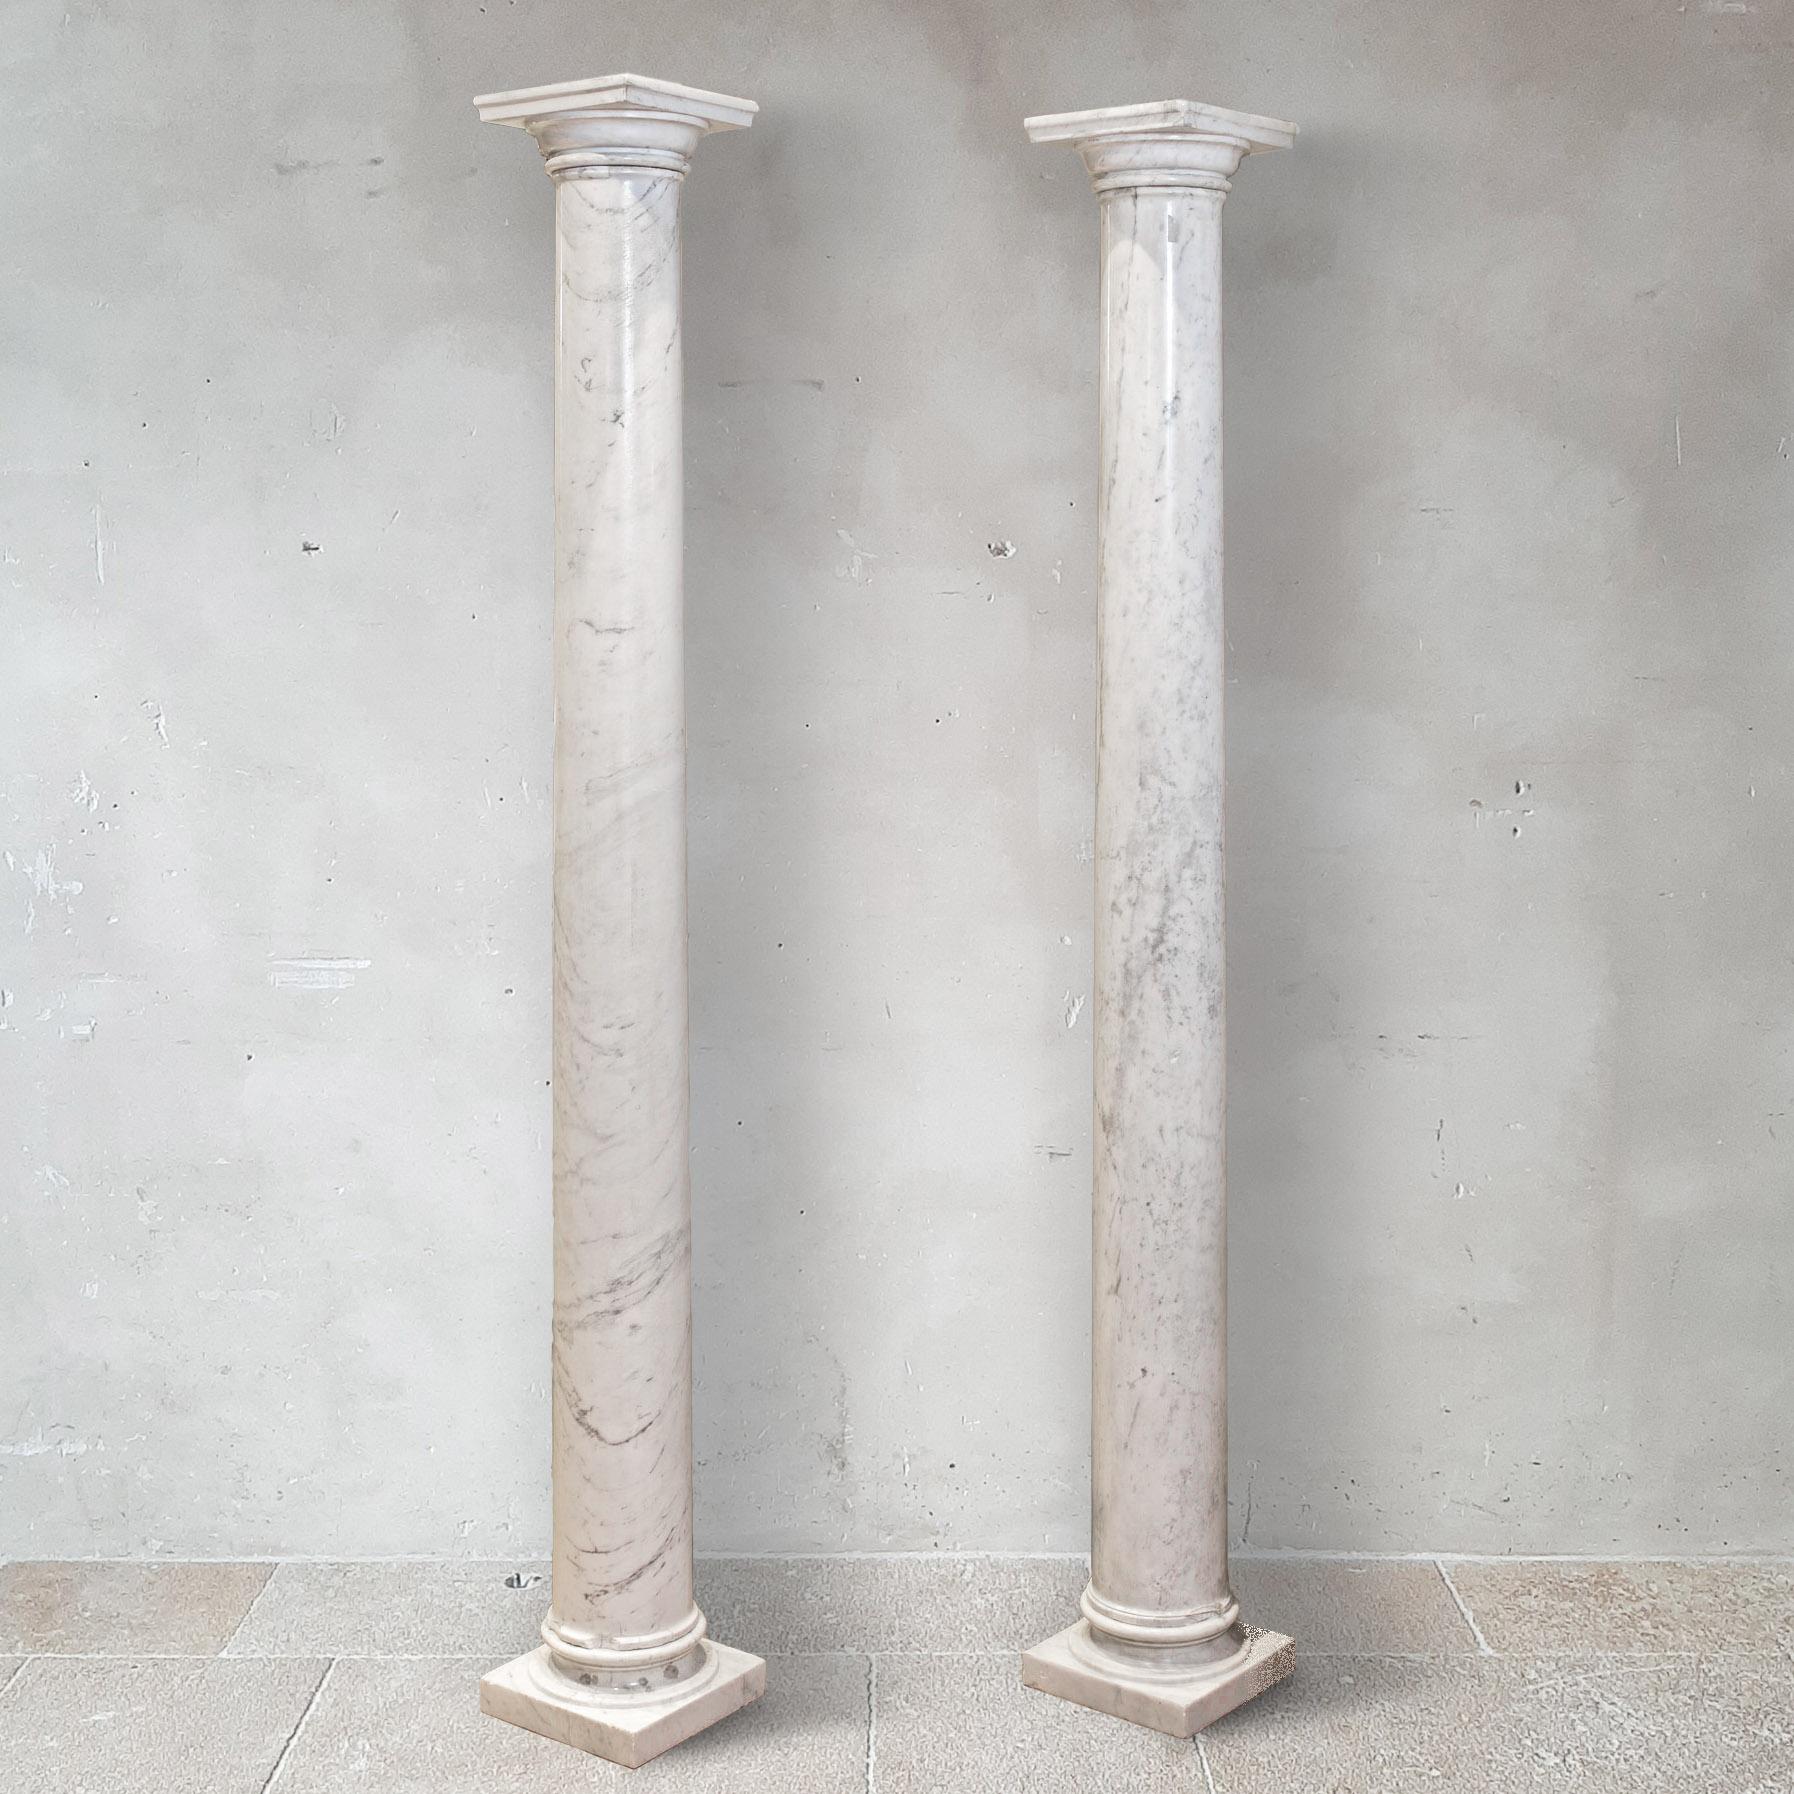 Prix pour la paire !
Paire de colonnes en marbre blanc veiné de gris clair, début du XXe siècle. Chapiteaux carrés toscans sur des piliers cylindriques effilés.

± h 193 × l 24,5 x p 24,5 cm

Remarque : La paire d'urnes en fonte émaillée française